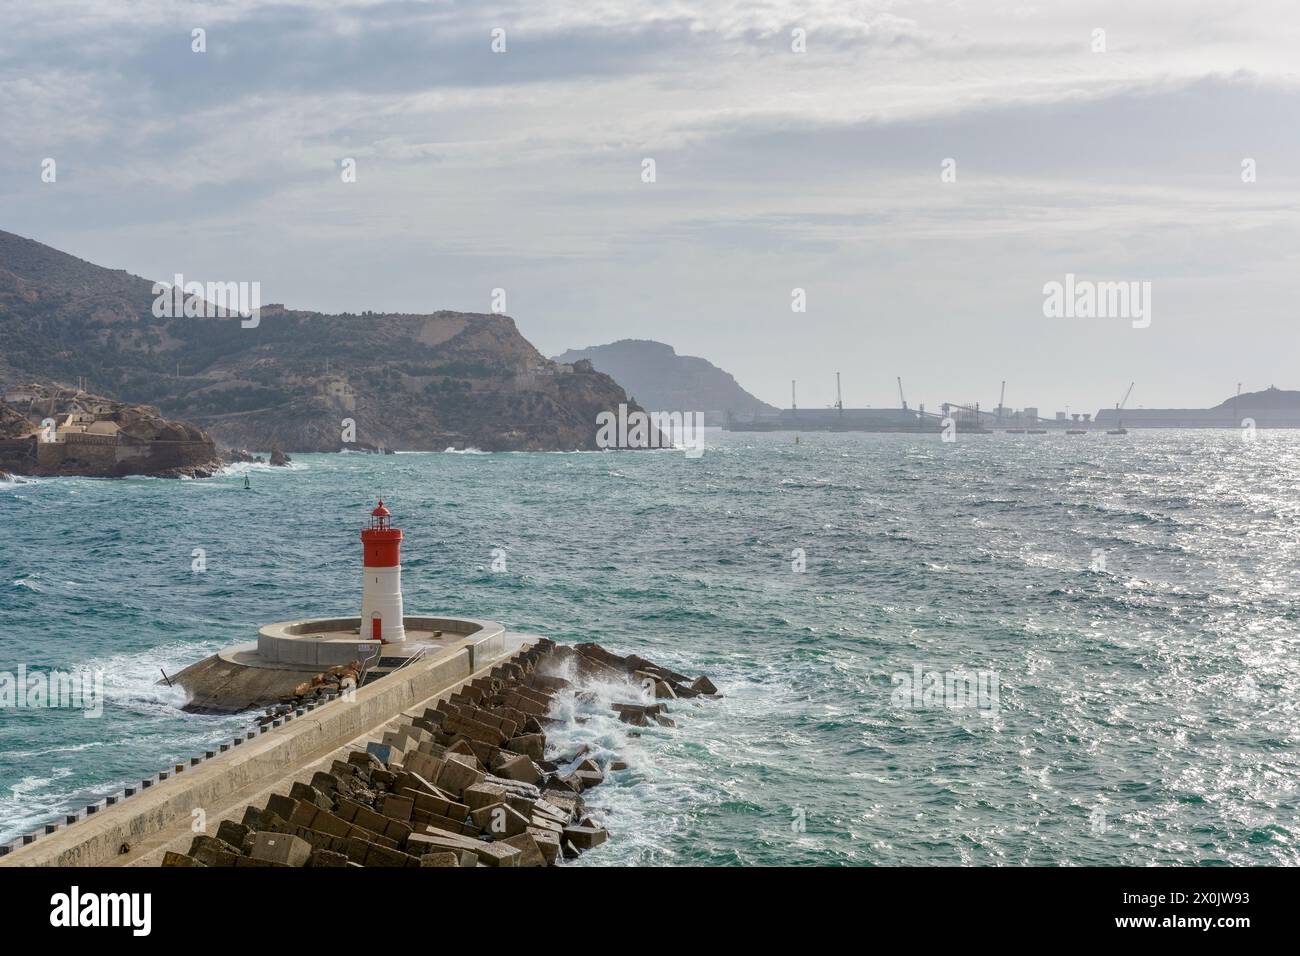 Le phare rouge du quai de Noël sur le brise-lames pour la défense contre le vent du sud-est de la baie dans le port de Carthagène, Espagne, Europe Banque D'Images